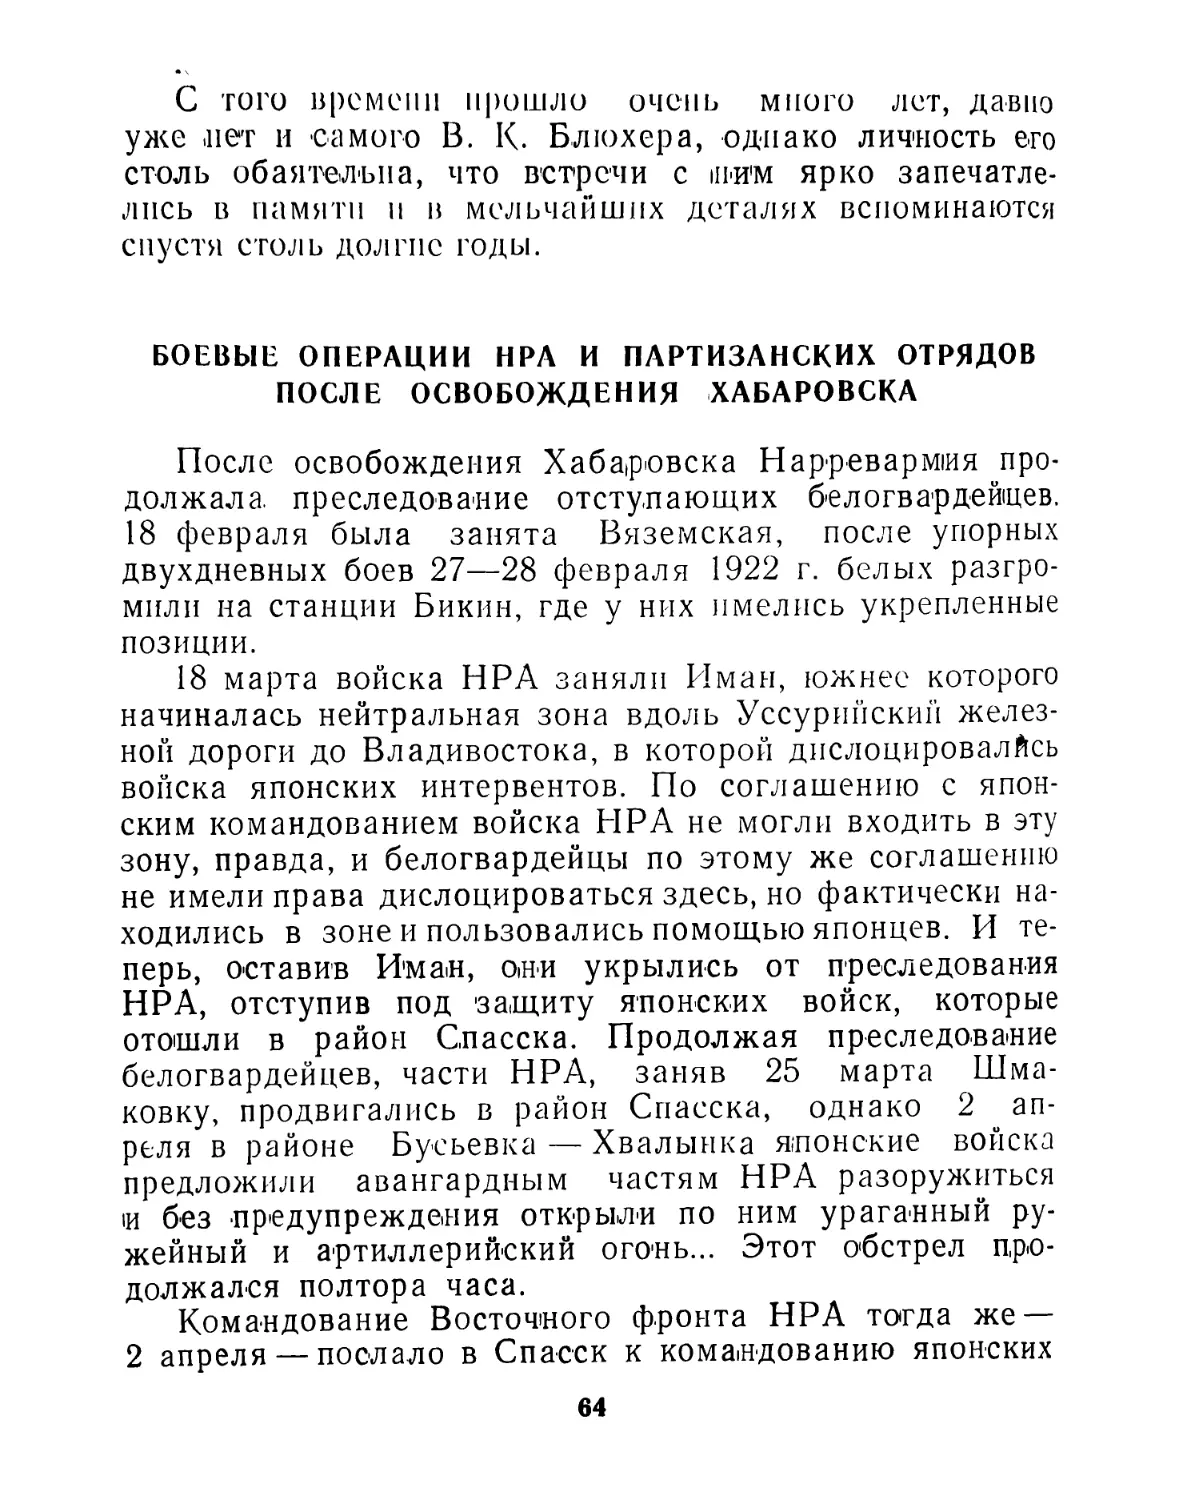 Боевые операции НРА и партизанских отрядов после освобождения Хабаровска